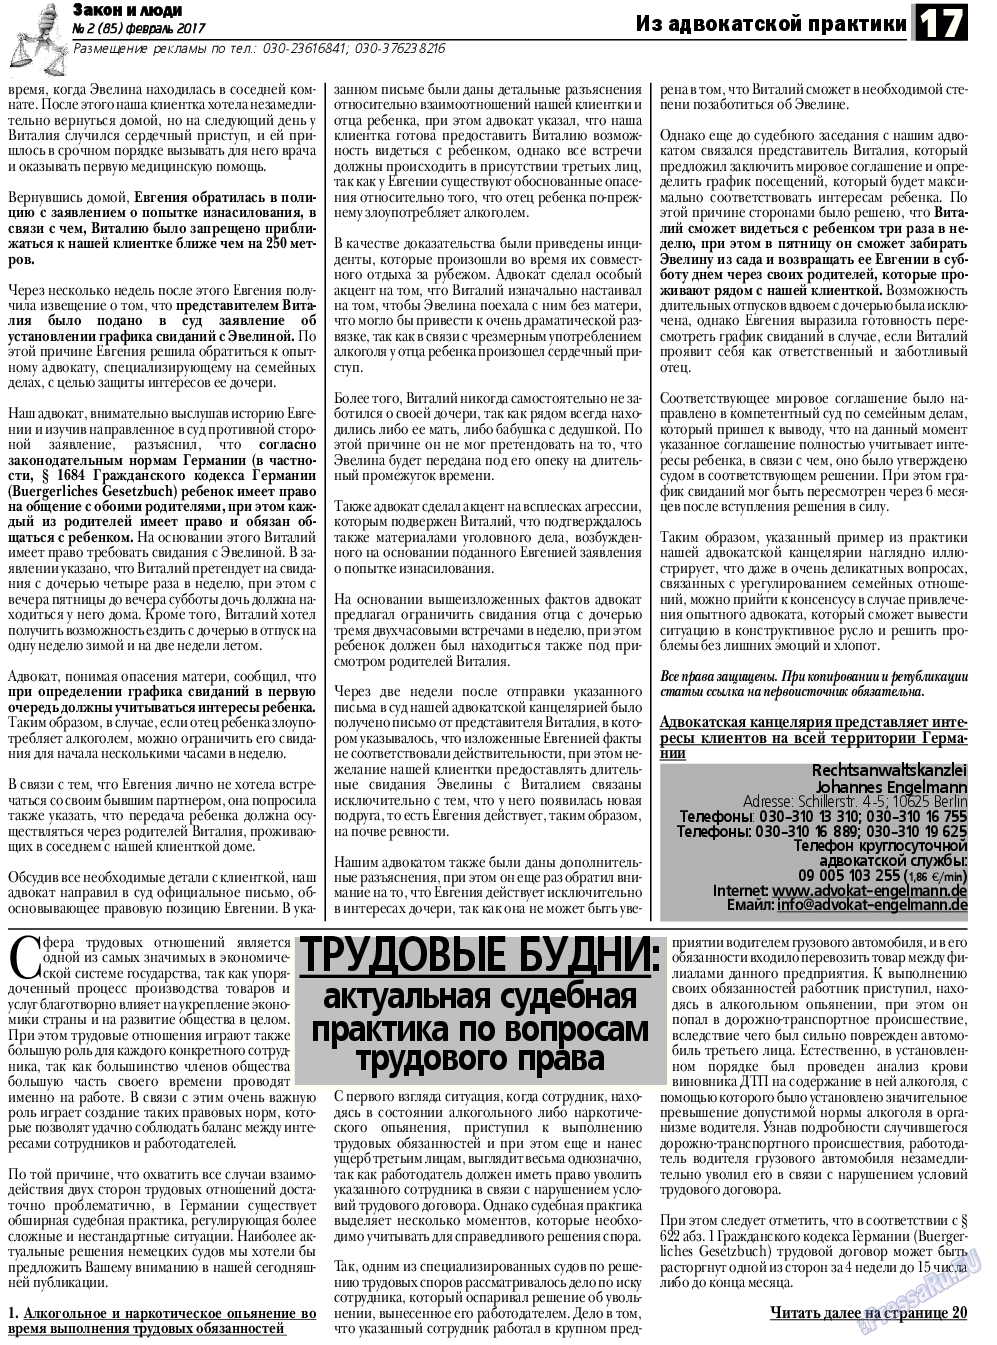 Закон и люди, газета. 2017 №2 стр.17